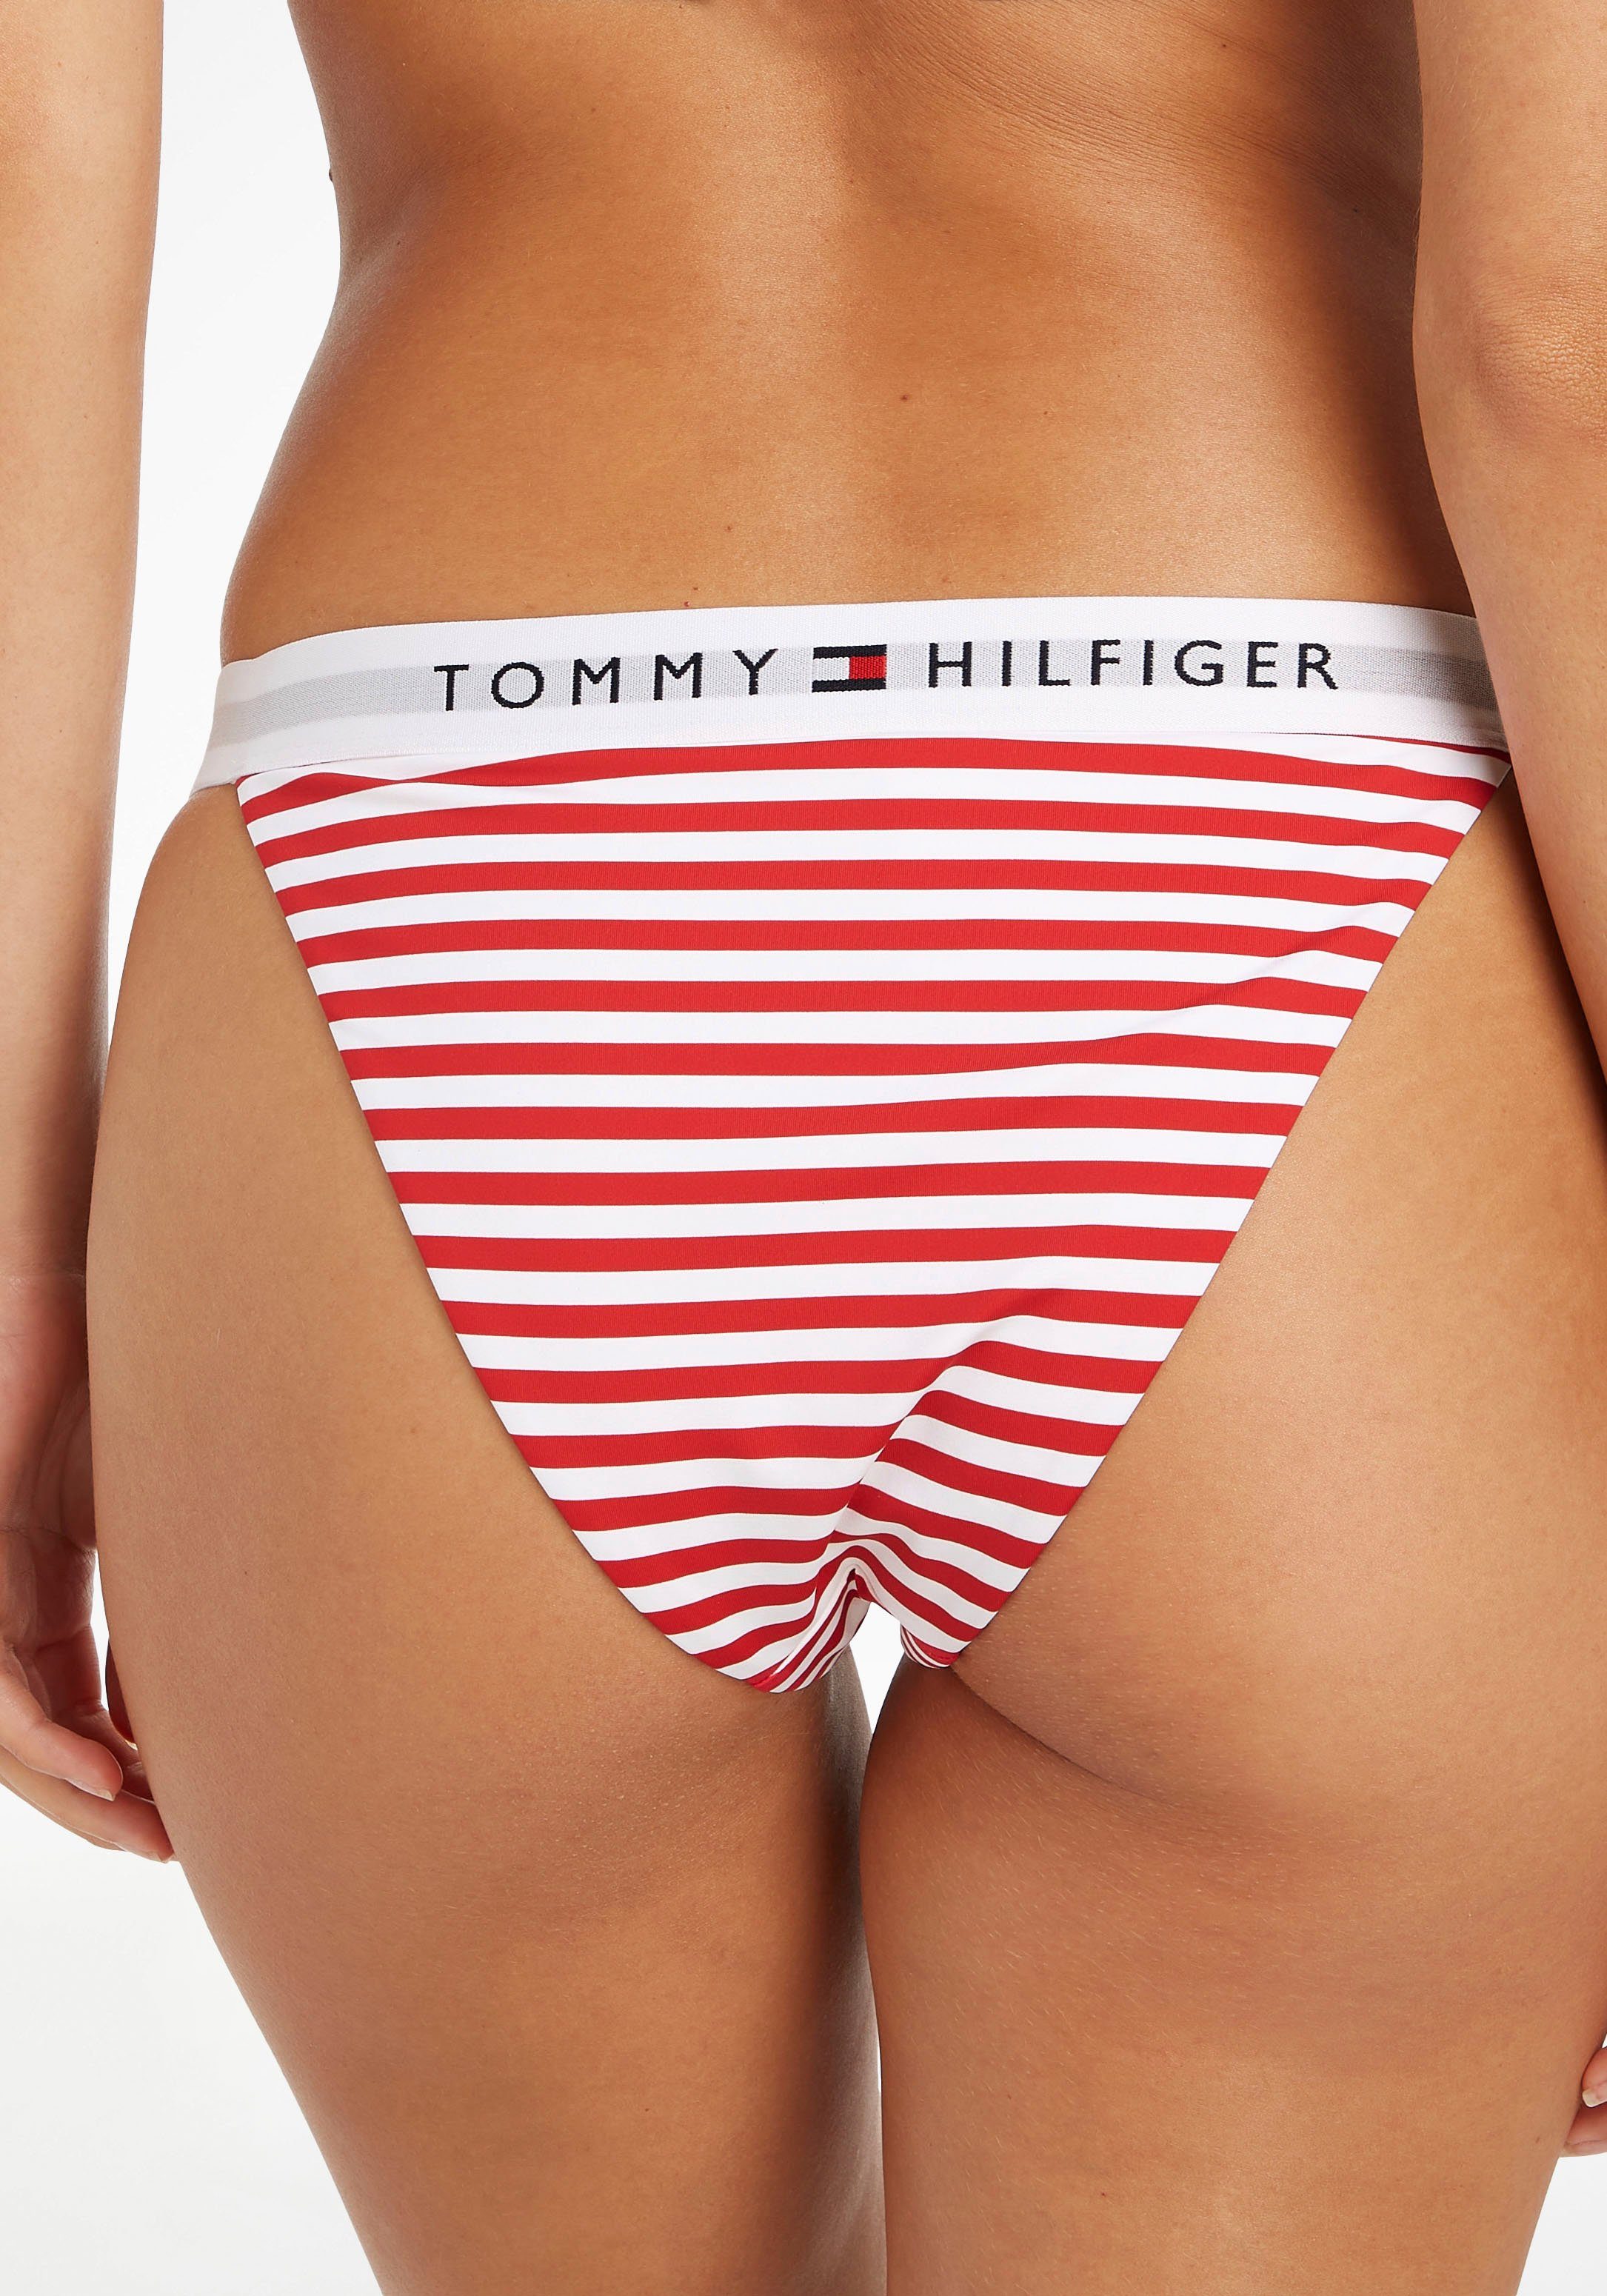 Hilfiger BIKINI WB Tommy PRINT TH mit Hilfiger-Branding CHEEKY Tommy Bikini-Hose Swimwear